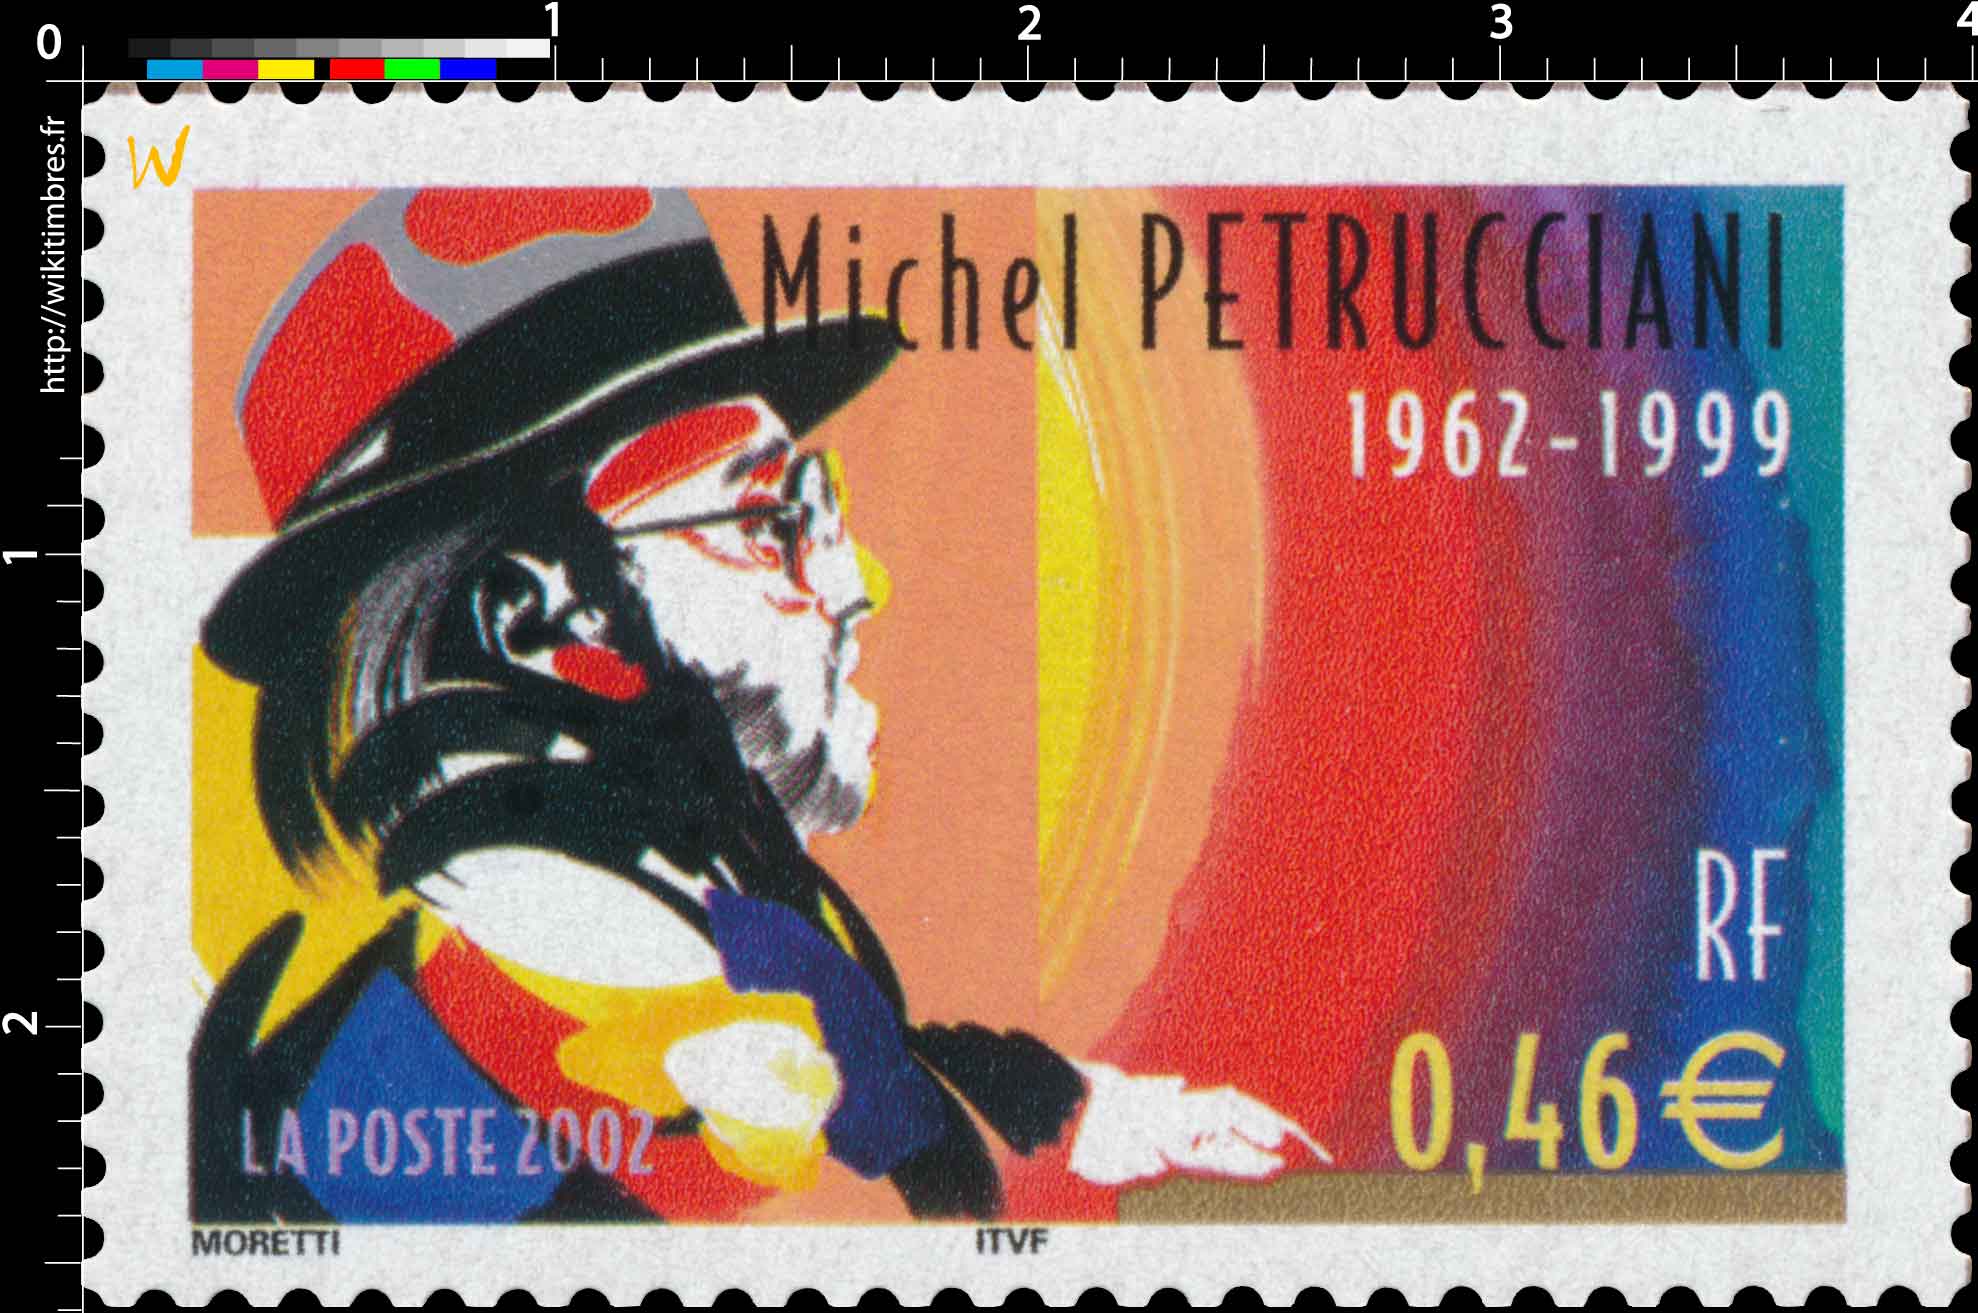 2002 Michel PETRUCCIANI 1962-1999